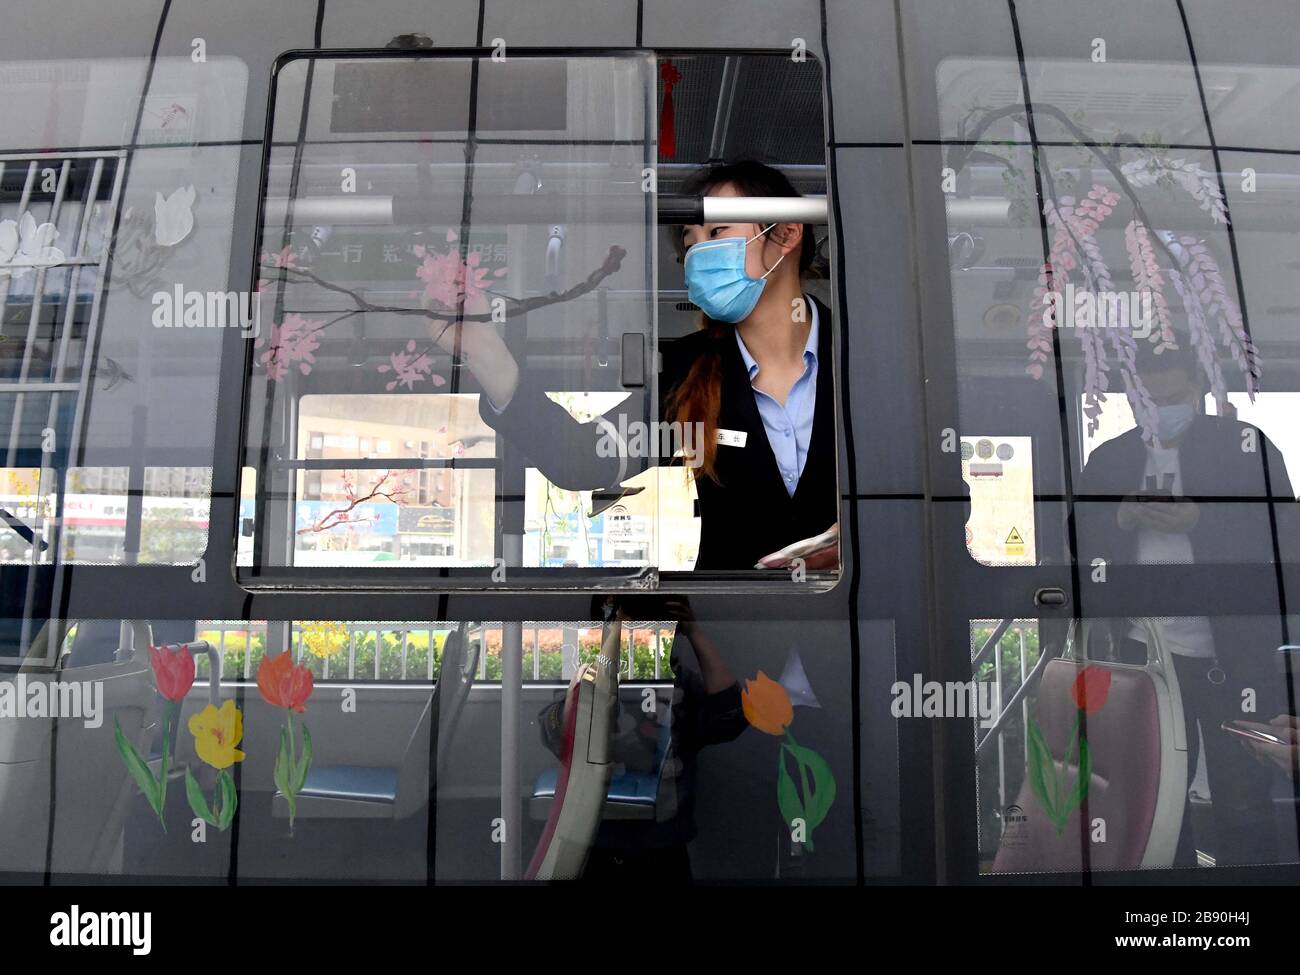 (200323) -- ZHENGZHOU, 23 marzo 2020 (Xinhua) -- Liu Xiangjie attrae fiori sulla finestra degli autobus di Zhengzhou, provincia di Henan della Cina centrale, 23 marzo 2020. Liu Xiangjie lavora come conduttore di autobus della linea S105 gestita dalla Zhengzhou Bus Communication Corporation. Ha dipinto modelli di fiori sulla finestra degli autobus di recente come la primavera viene. (Xinhua/li AN) Foto Stock